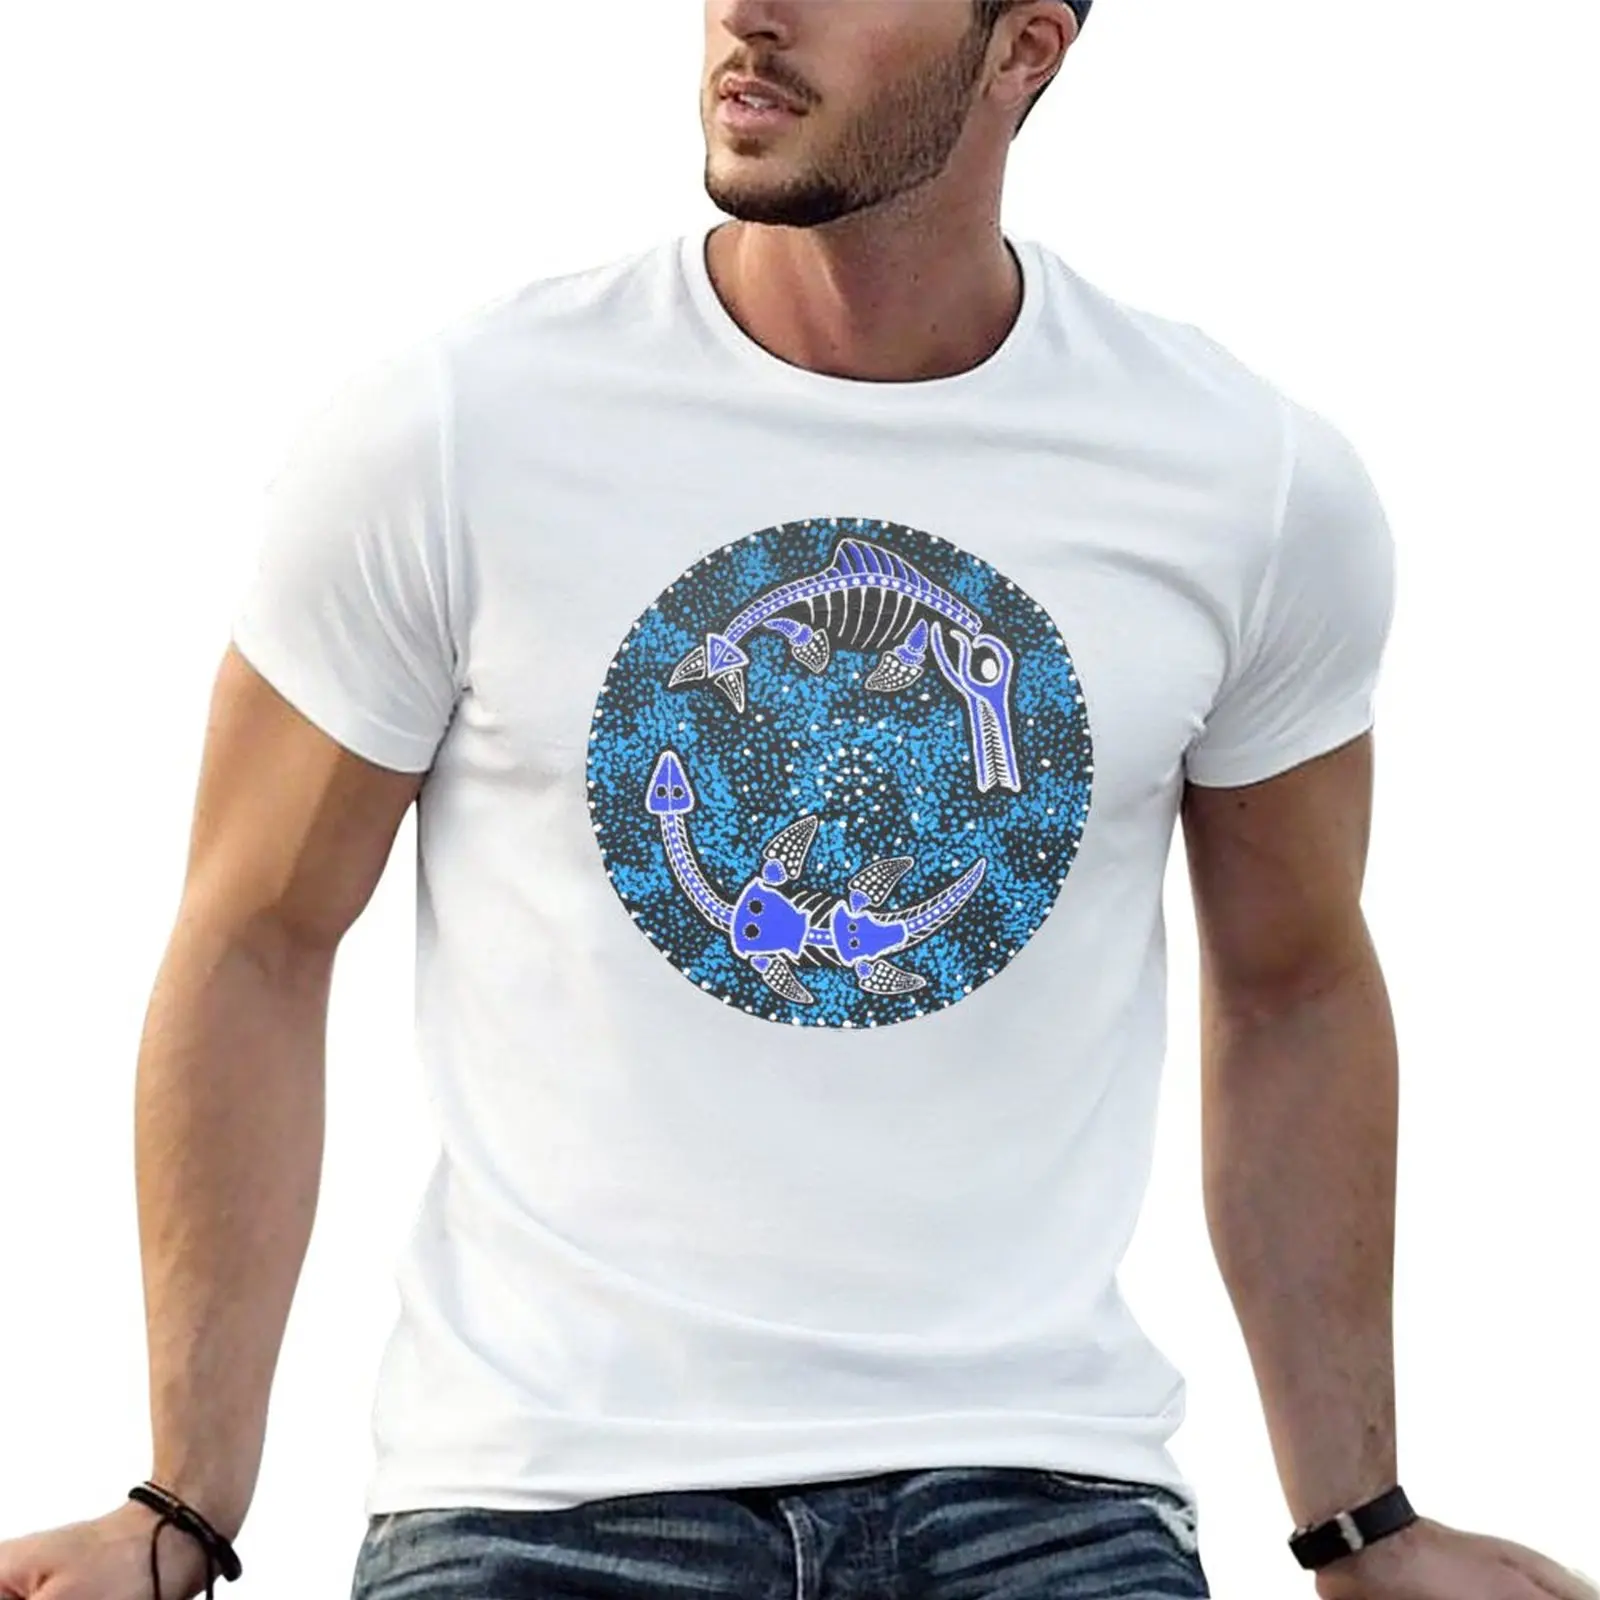 

Новинка, футболка с рисунком Юрского периода моря, мужские футболки с графическим рисунком, тренировочные футболки